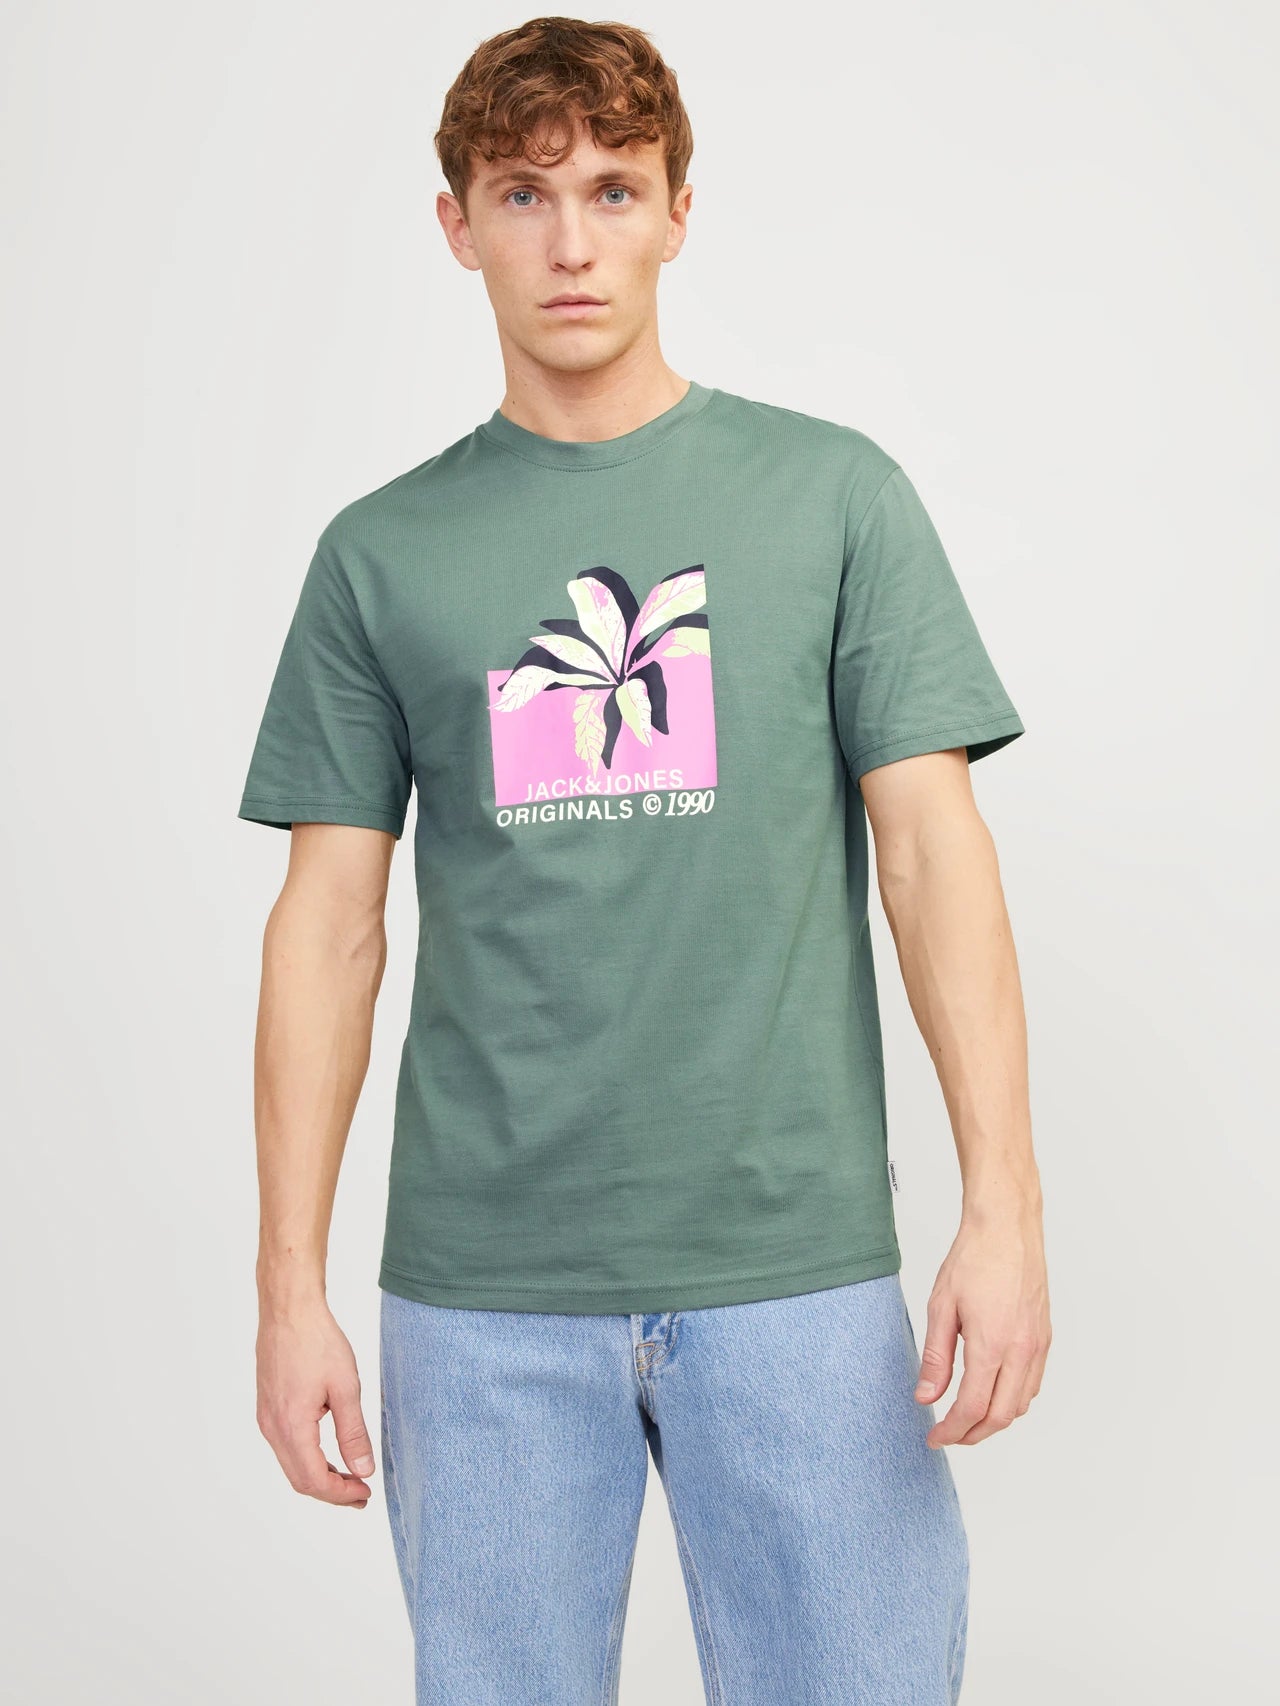 Jack & Jones | Printed Crew Neck T-Shirt | Laurel Wreath